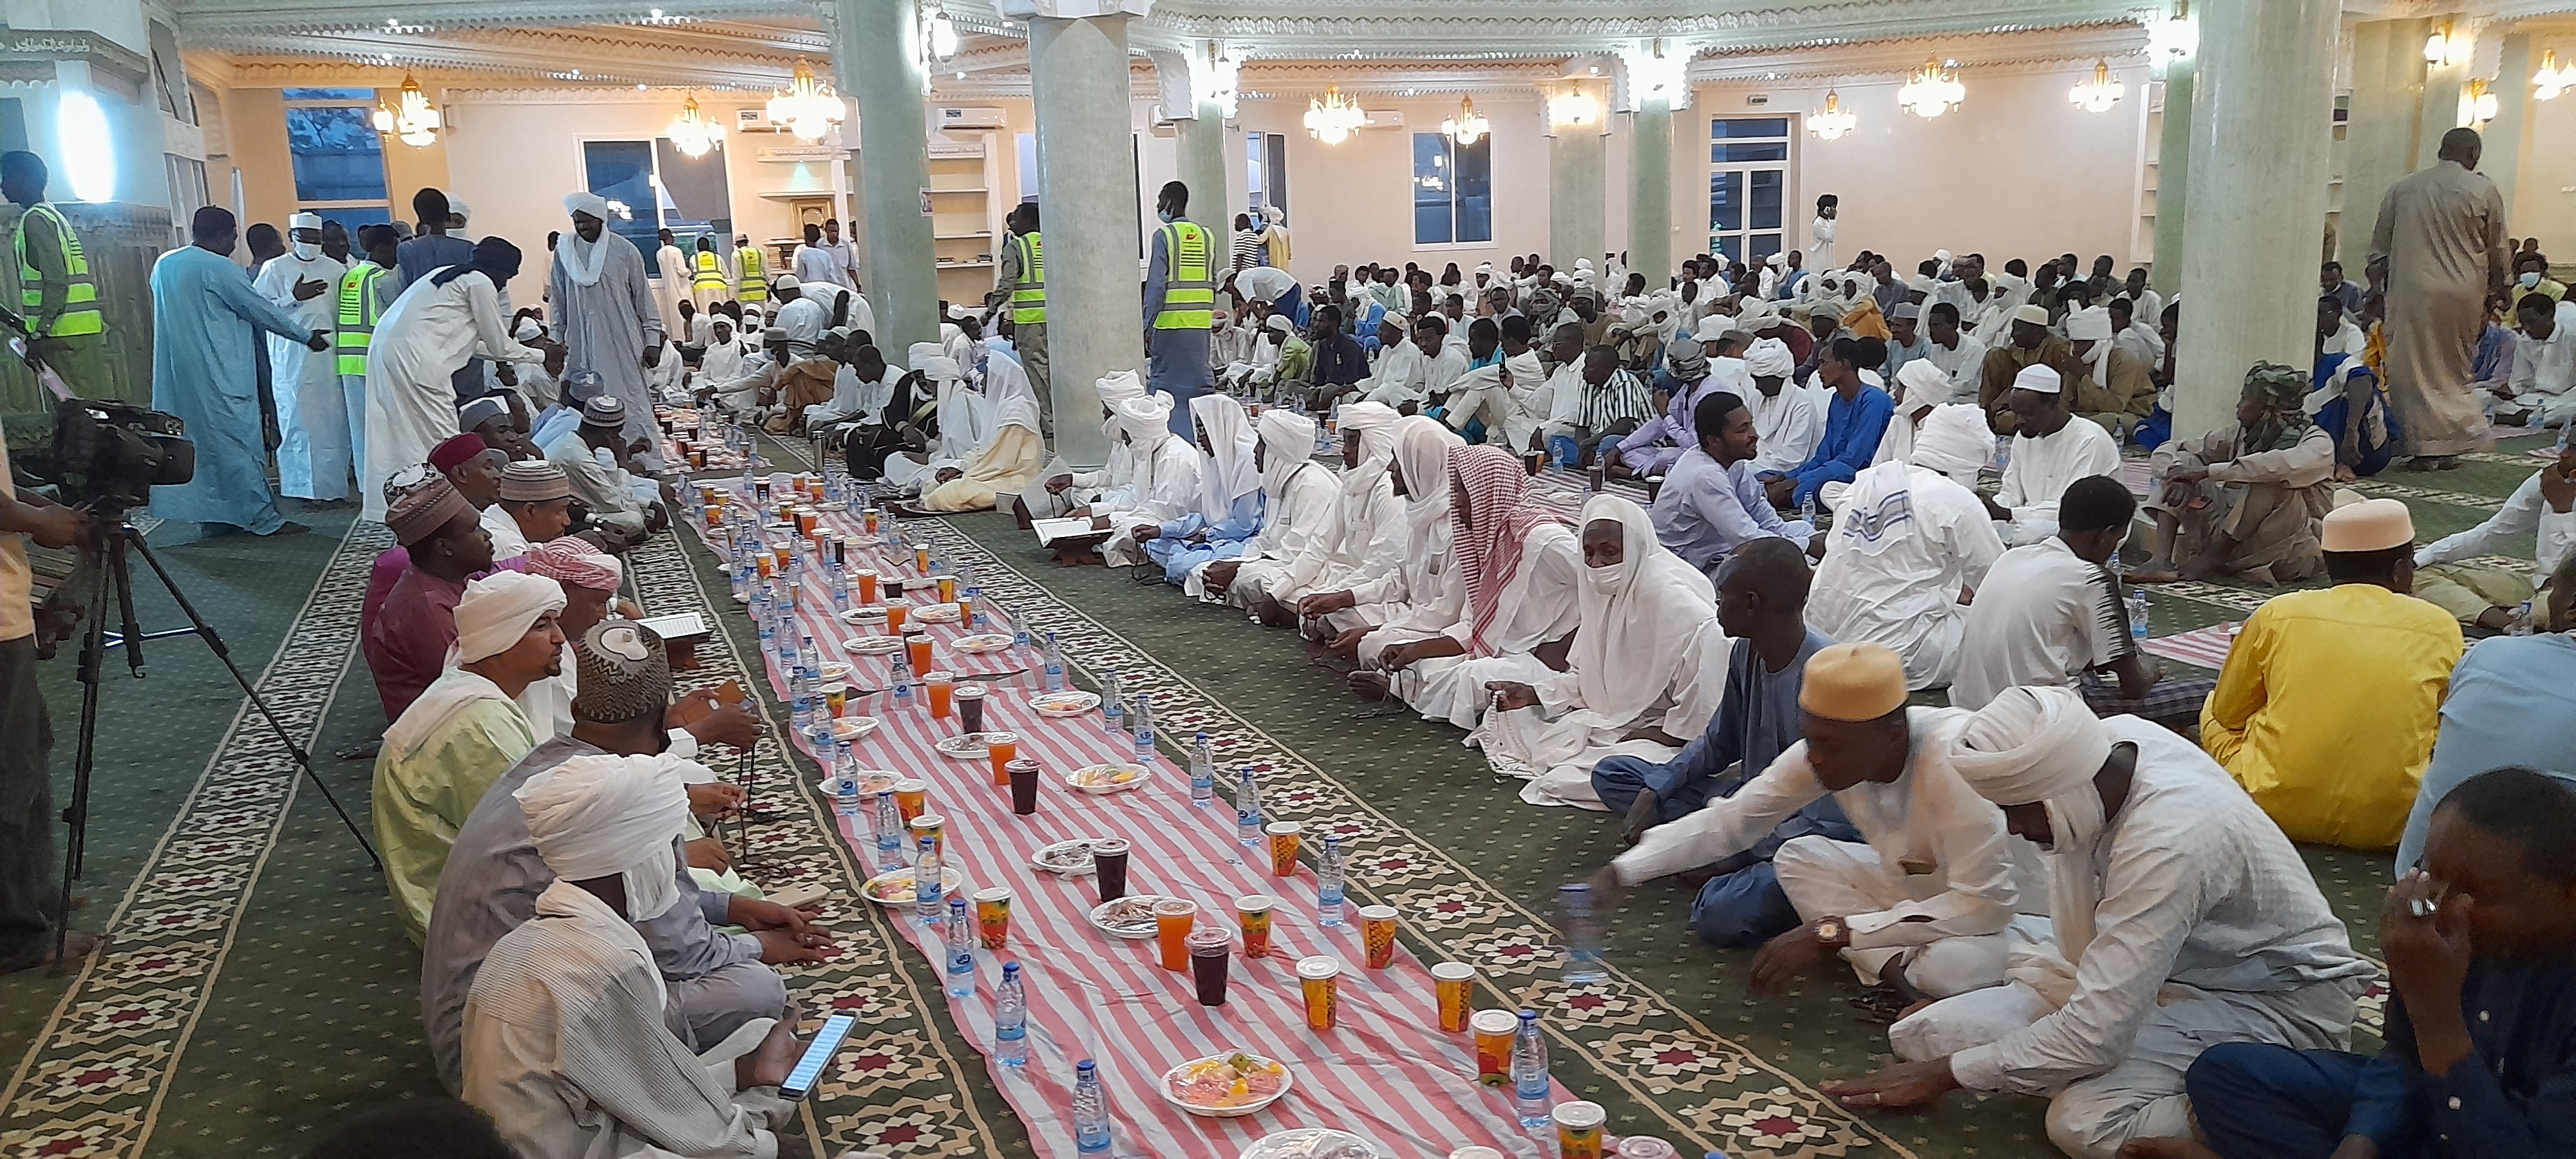 Tchad : un "Iftar Sayim" en l'honneur des martyrs, en particulier le Maréchal Idriss Deby Itno